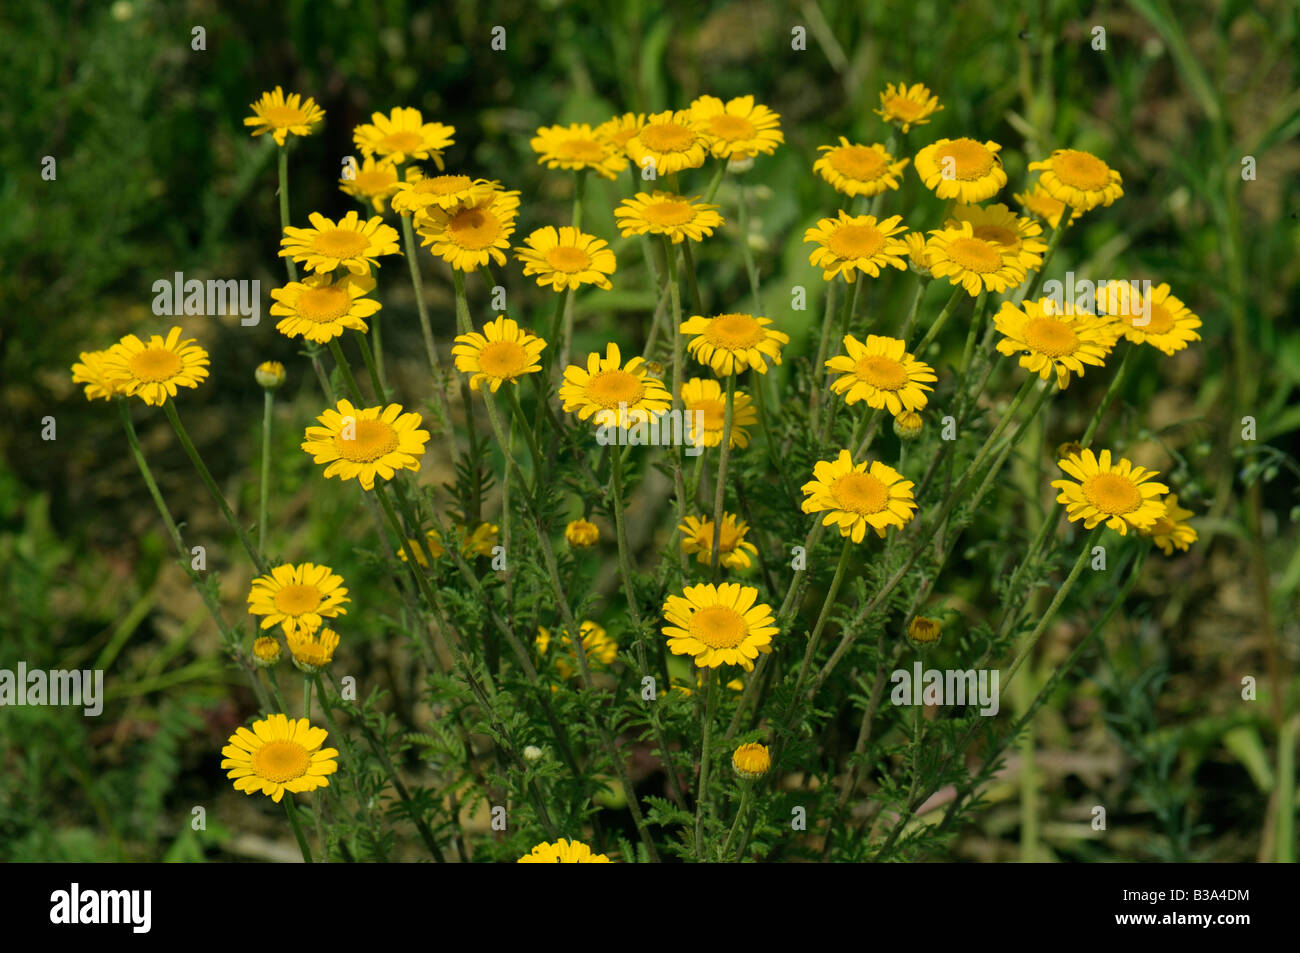 Corn Marigold, Corn Daisy (Chrysanthemum segetum, Xanthophthalmum segetum, Glebionis segetum) flowering Stock Photo